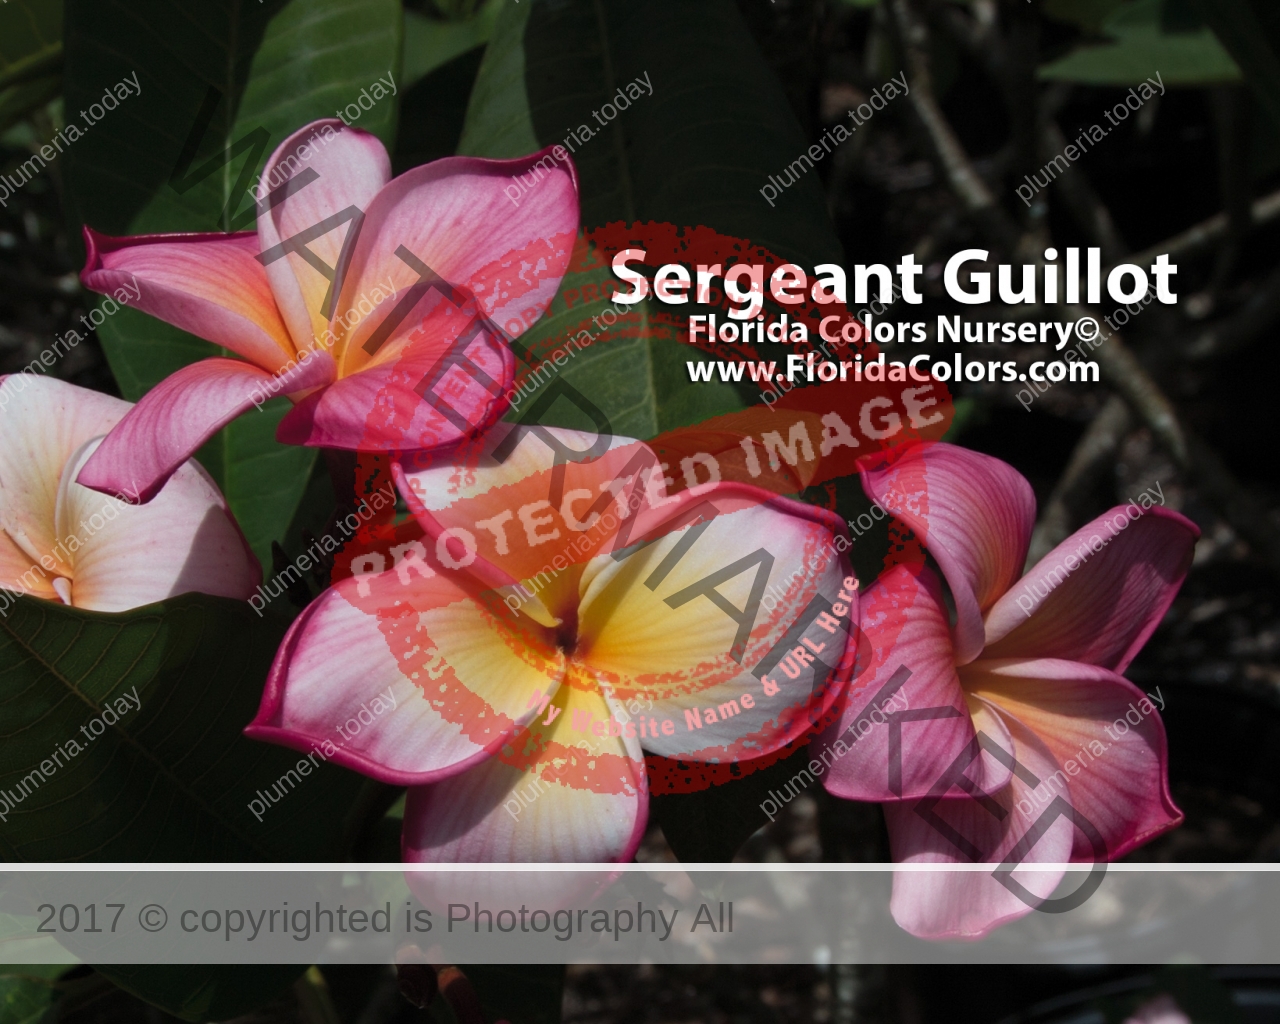 Sergeant-Guillot_2154.jpg